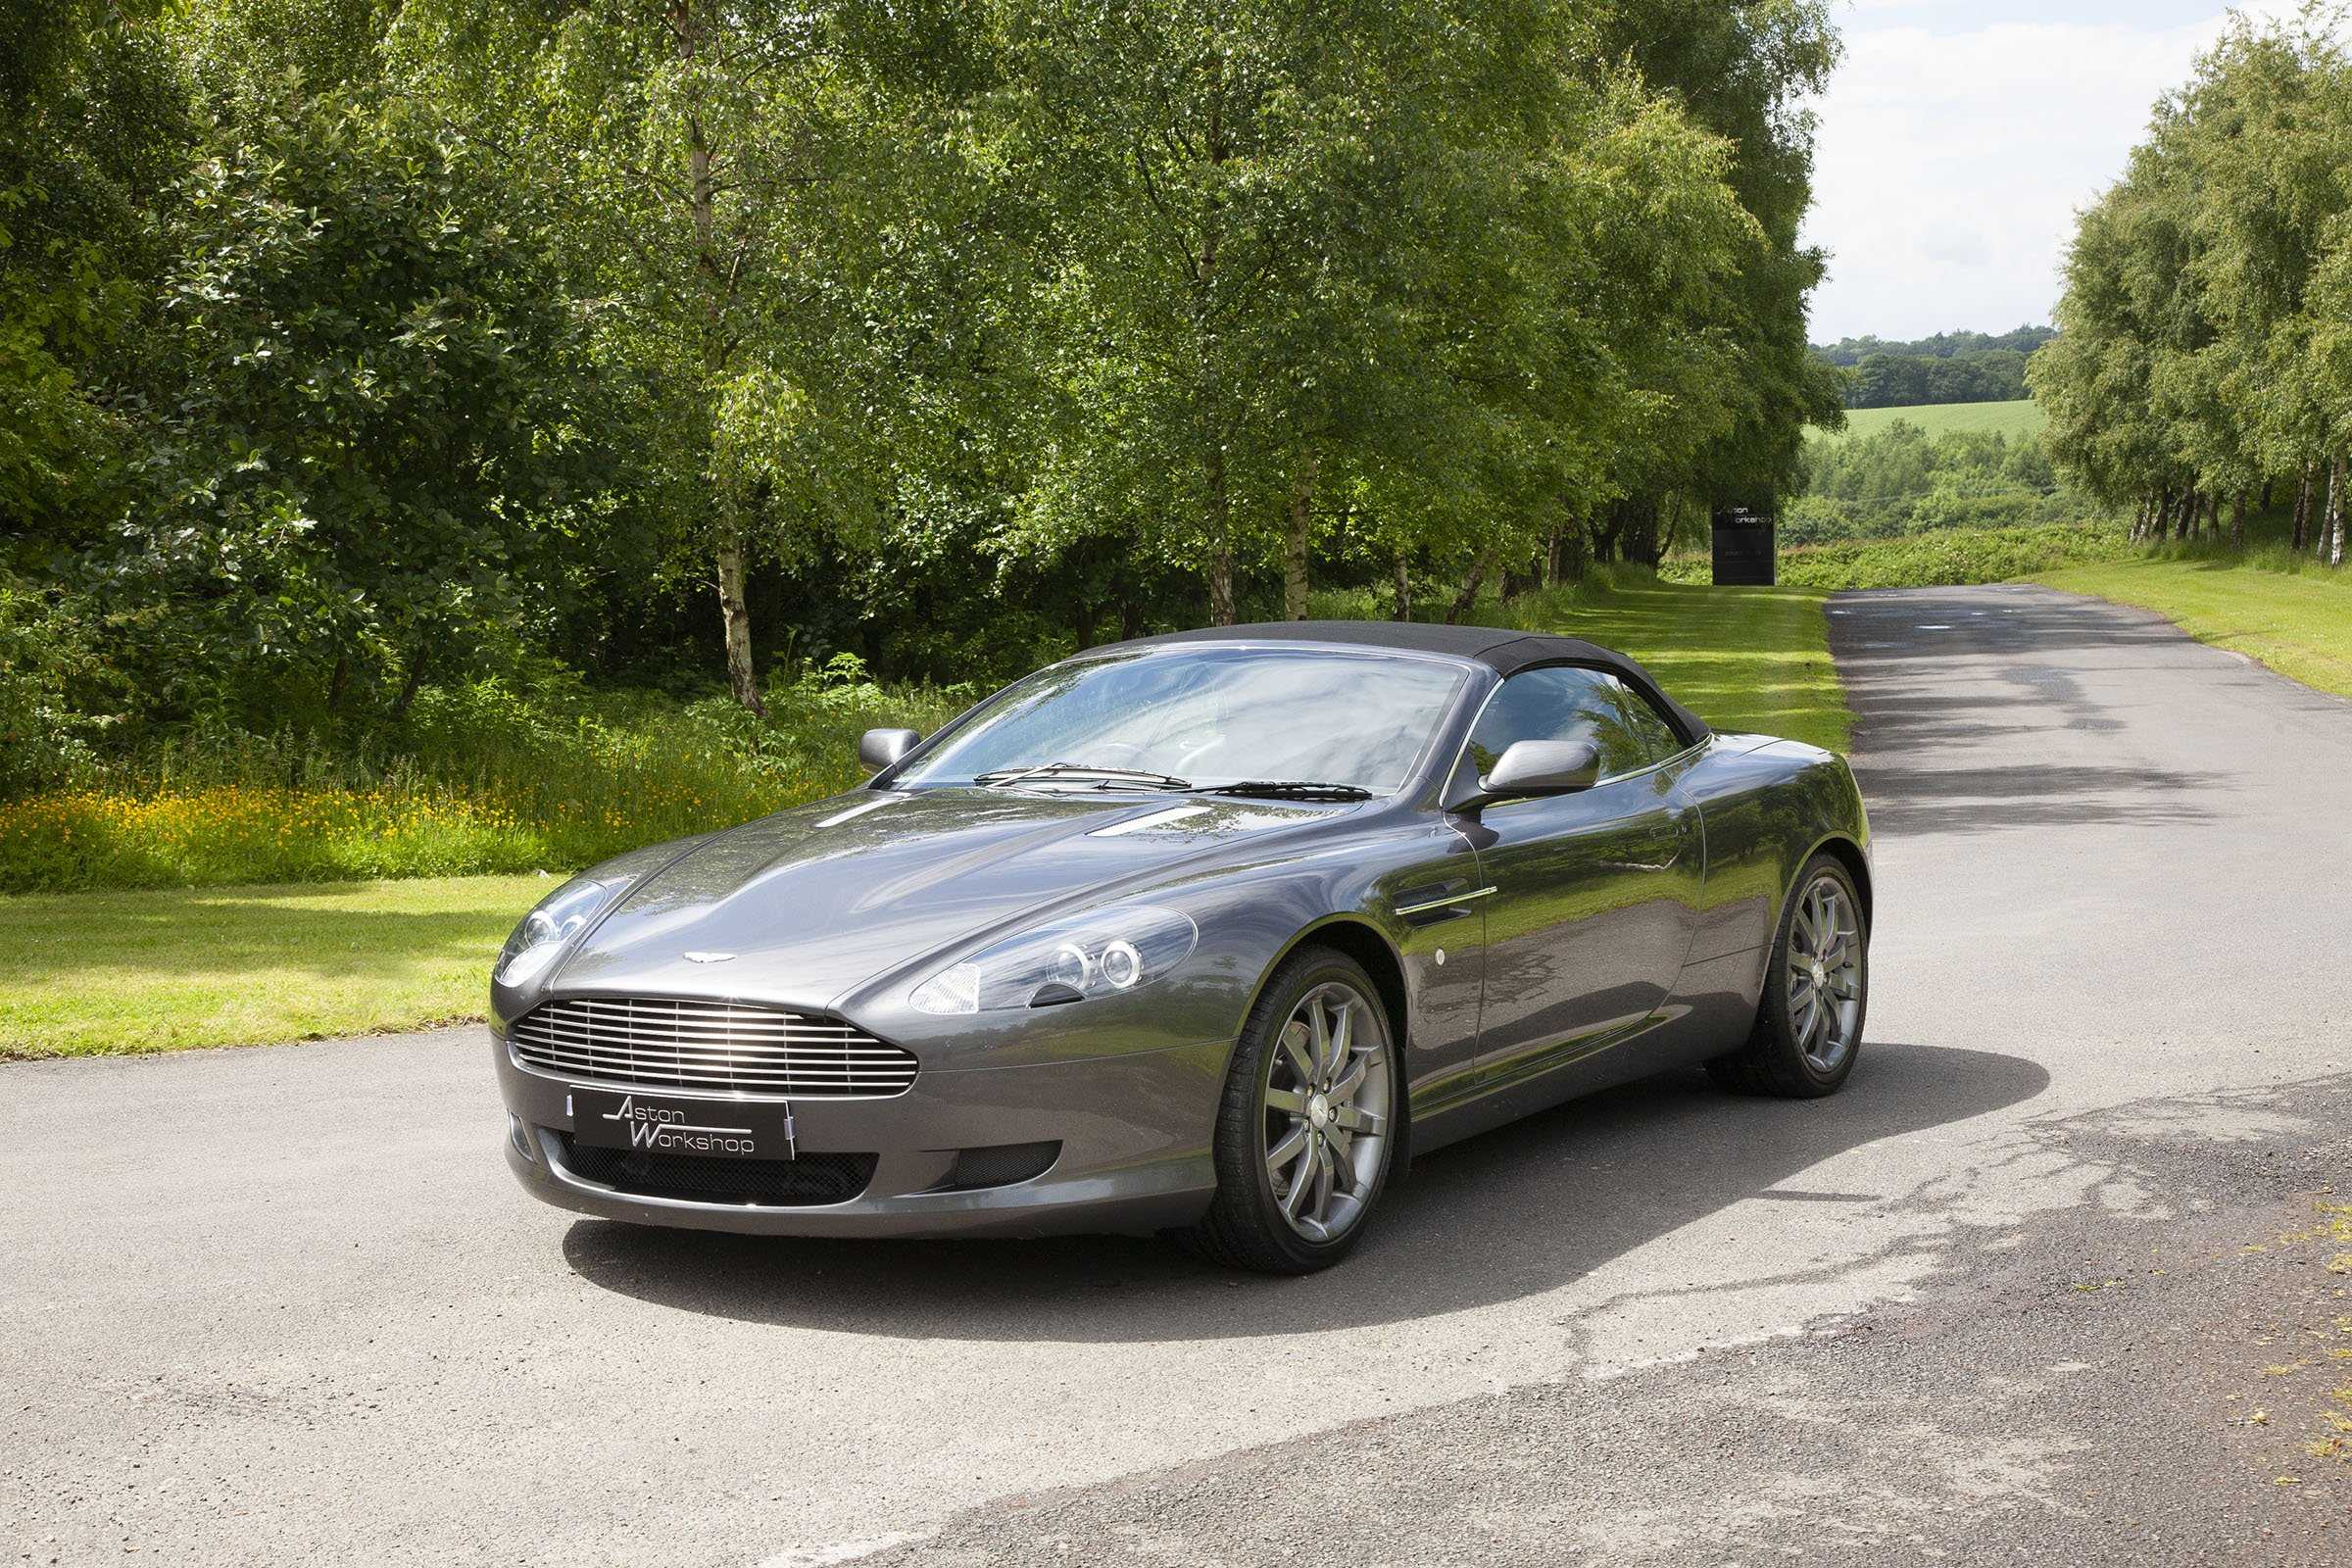 Aston martin db9: технические характеристики, разгон, максимальная скорость, фото, видео - вики суперкары